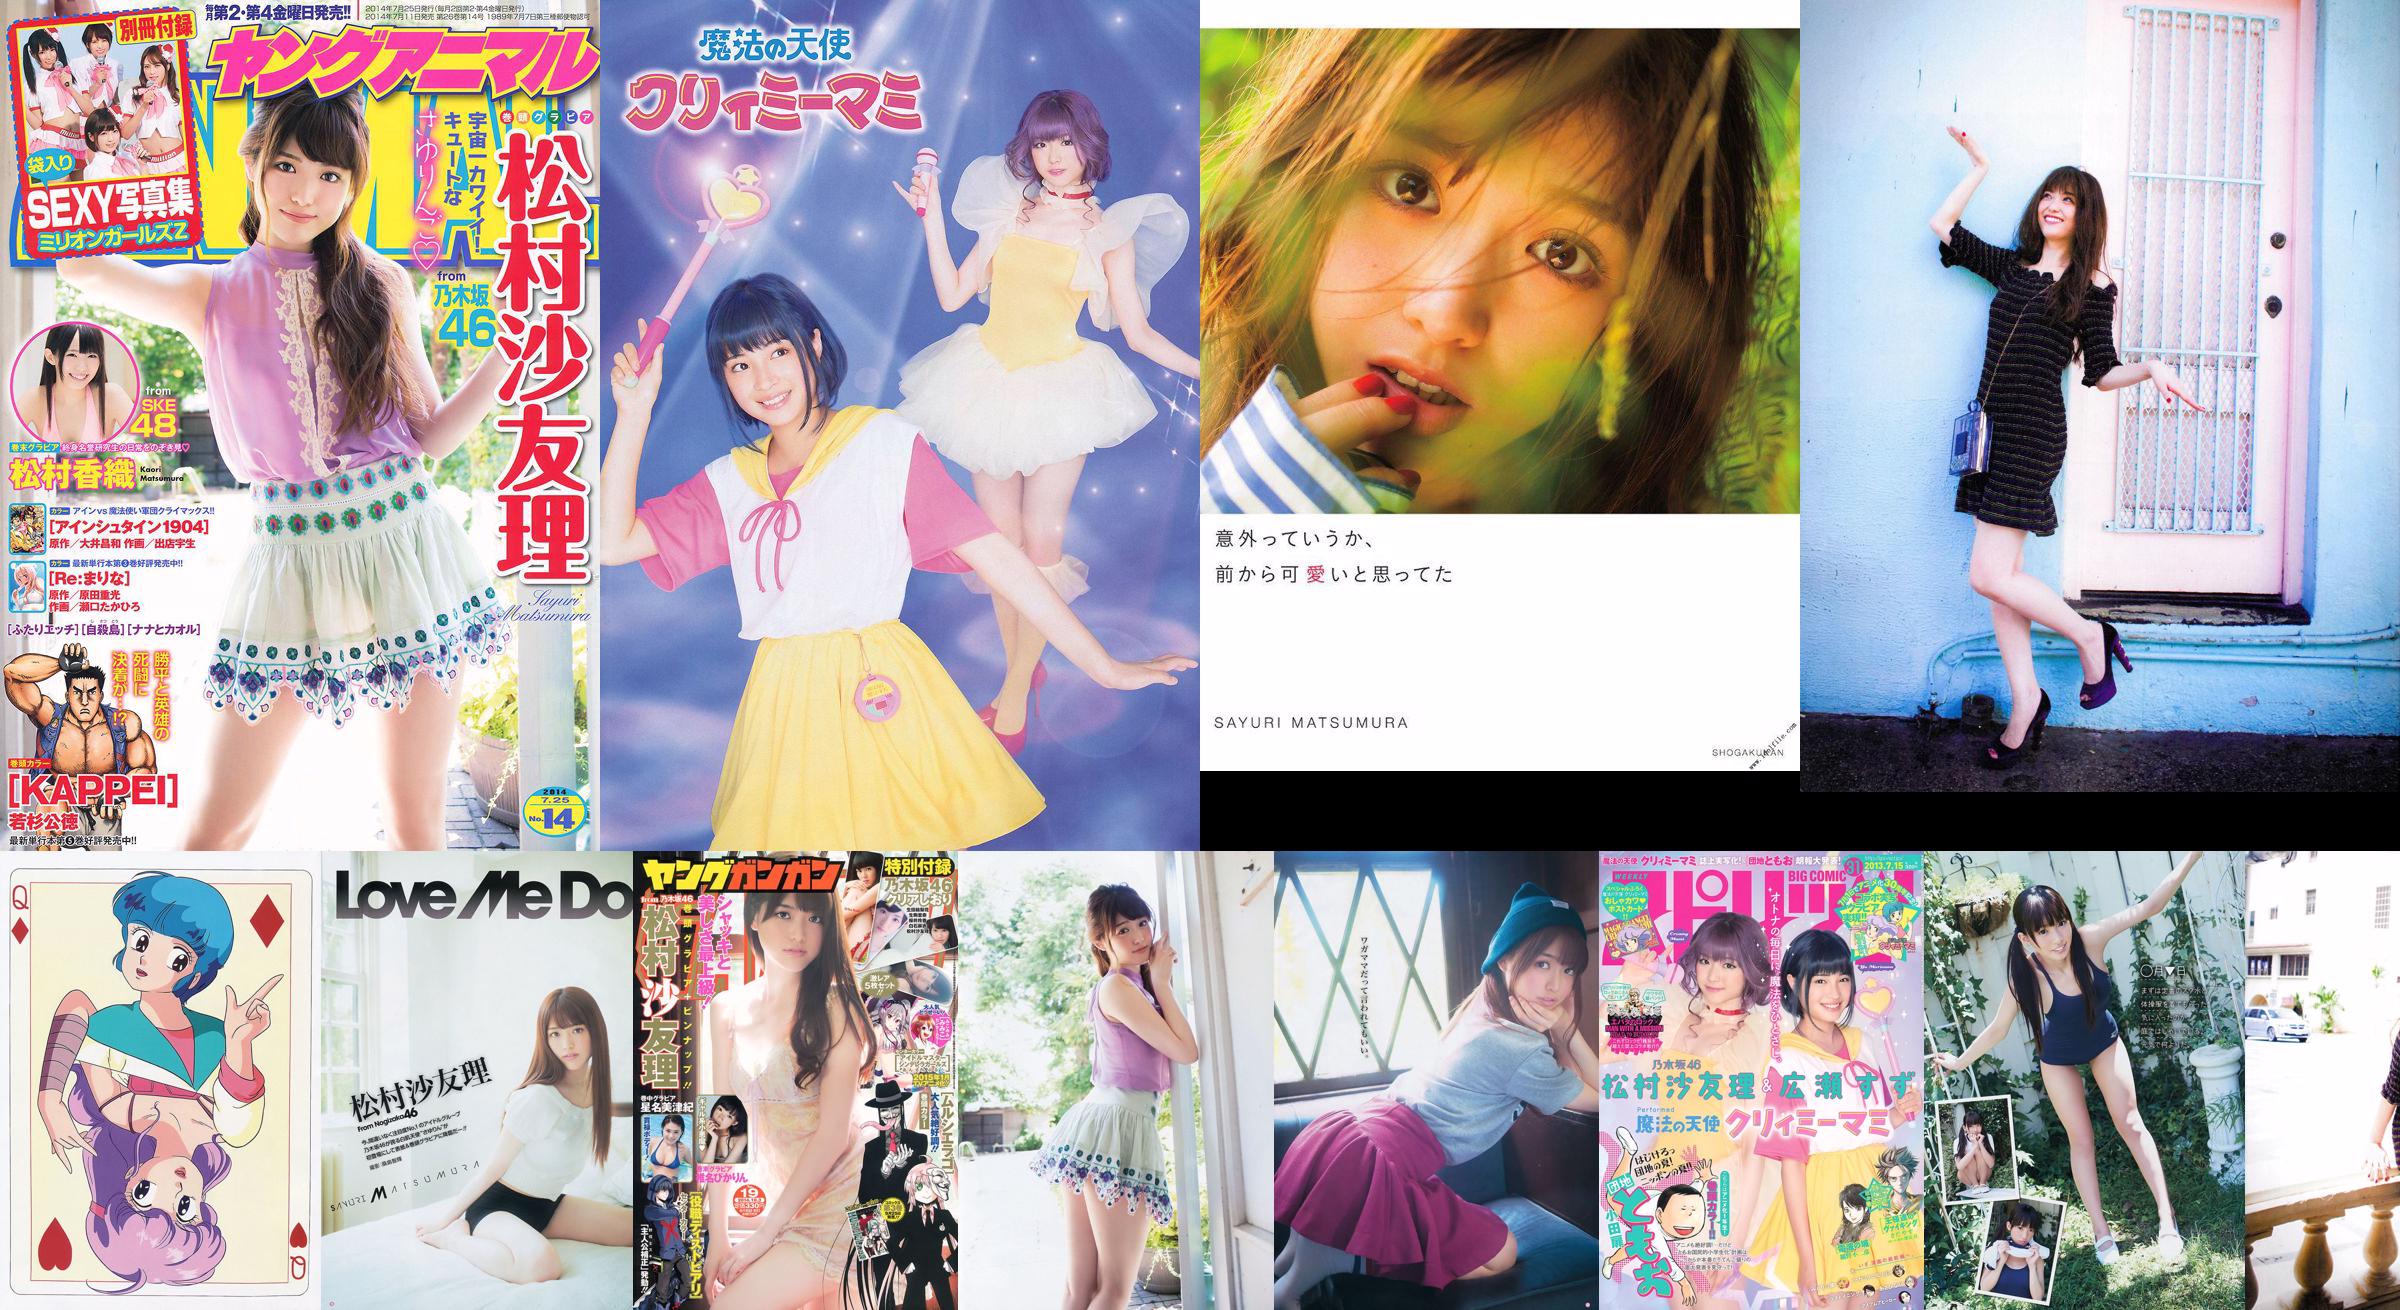 Sayuri Matsumura << Thật ngạc nhiên, tôi đã nghĩ nó rất dễ thương từ trước >> [PhotoBook] No.d7c9a6 Trang 1